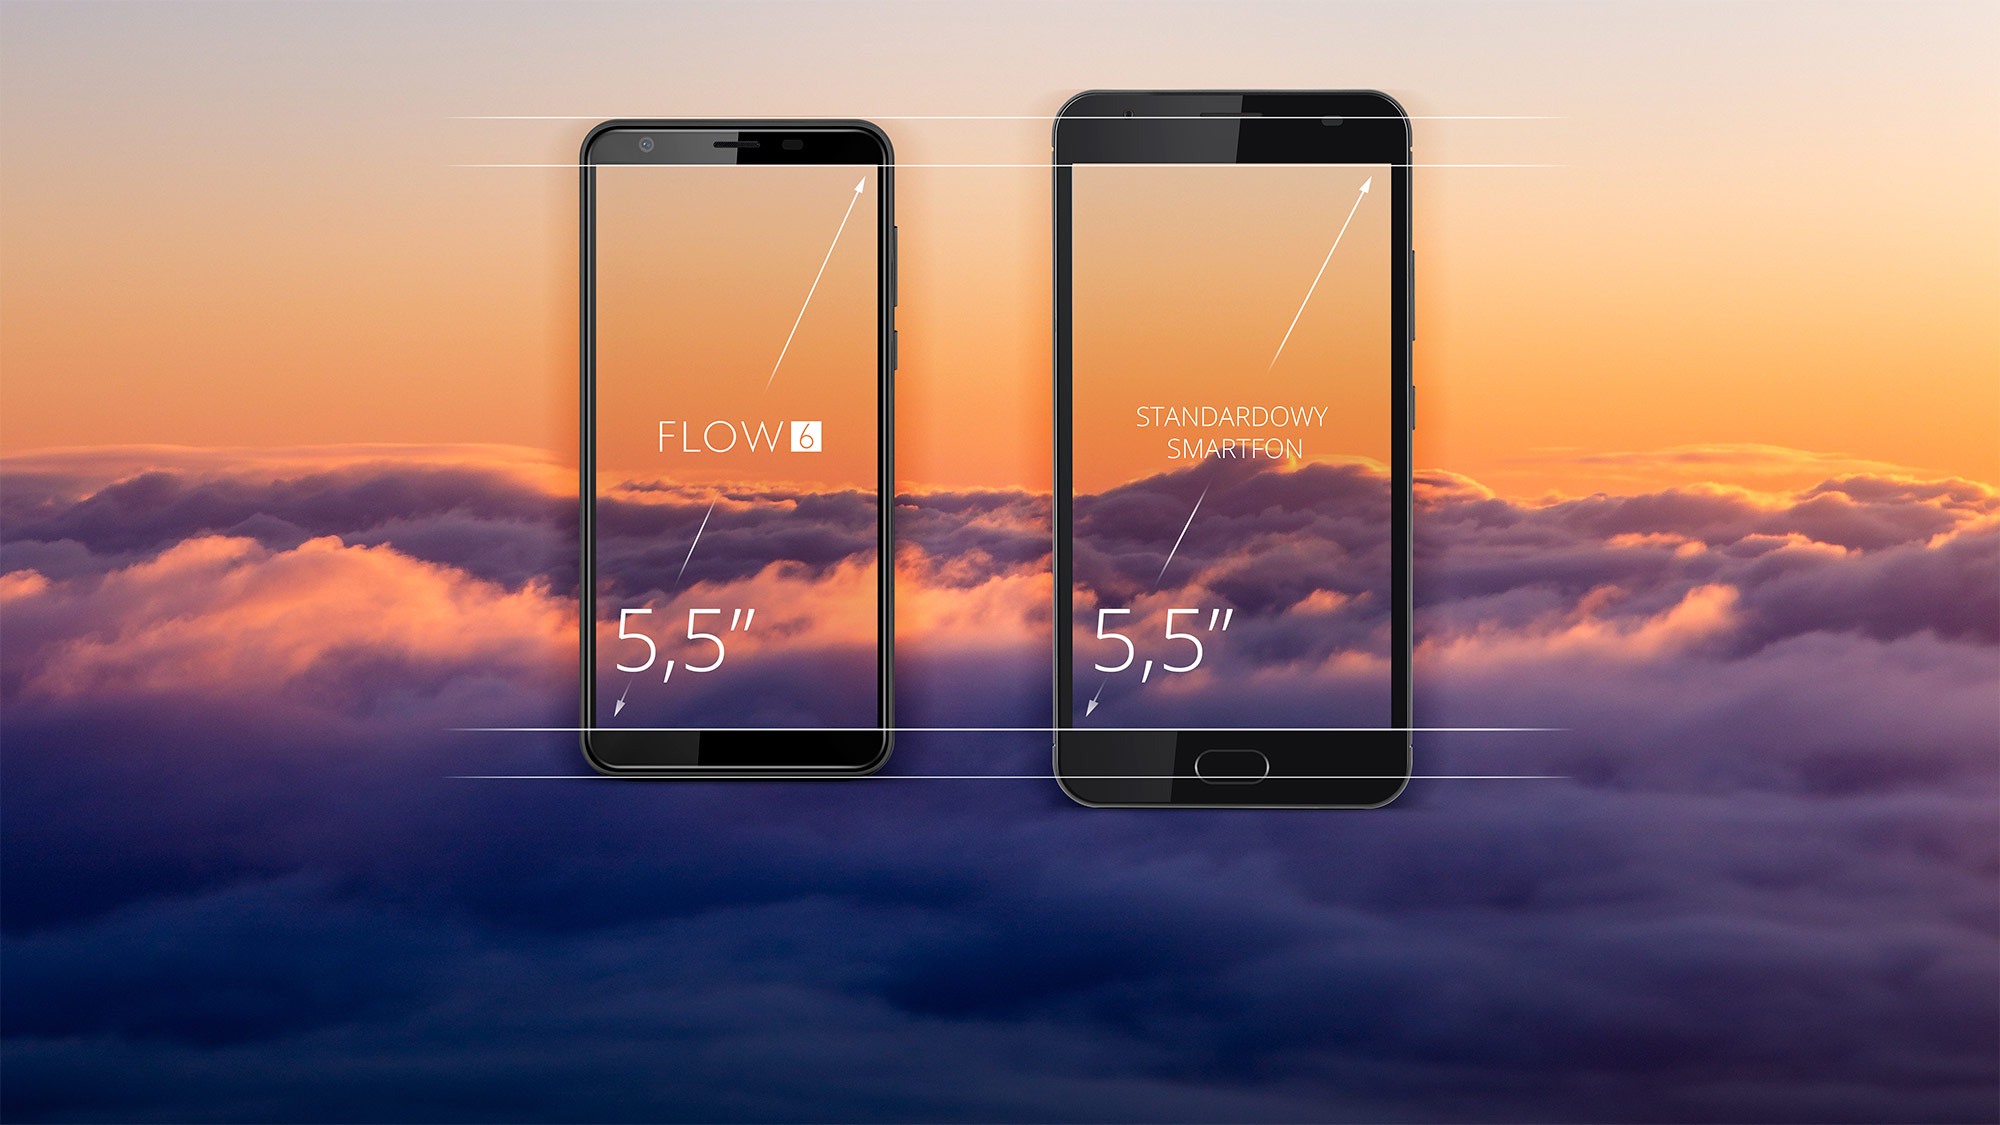 FLOW 6 ma Ci do zaoferowania także smukły design. Jedną z zalet tego modelu są zmniejszone ramki, dzięki czemu telefon jest znacznie zgrabniejszy, przez co idealnie układa się w dłoni. Sam przekonaj się jak komfortowy w użytkowaniu jest nowy smartfon Kruger&Matz.   